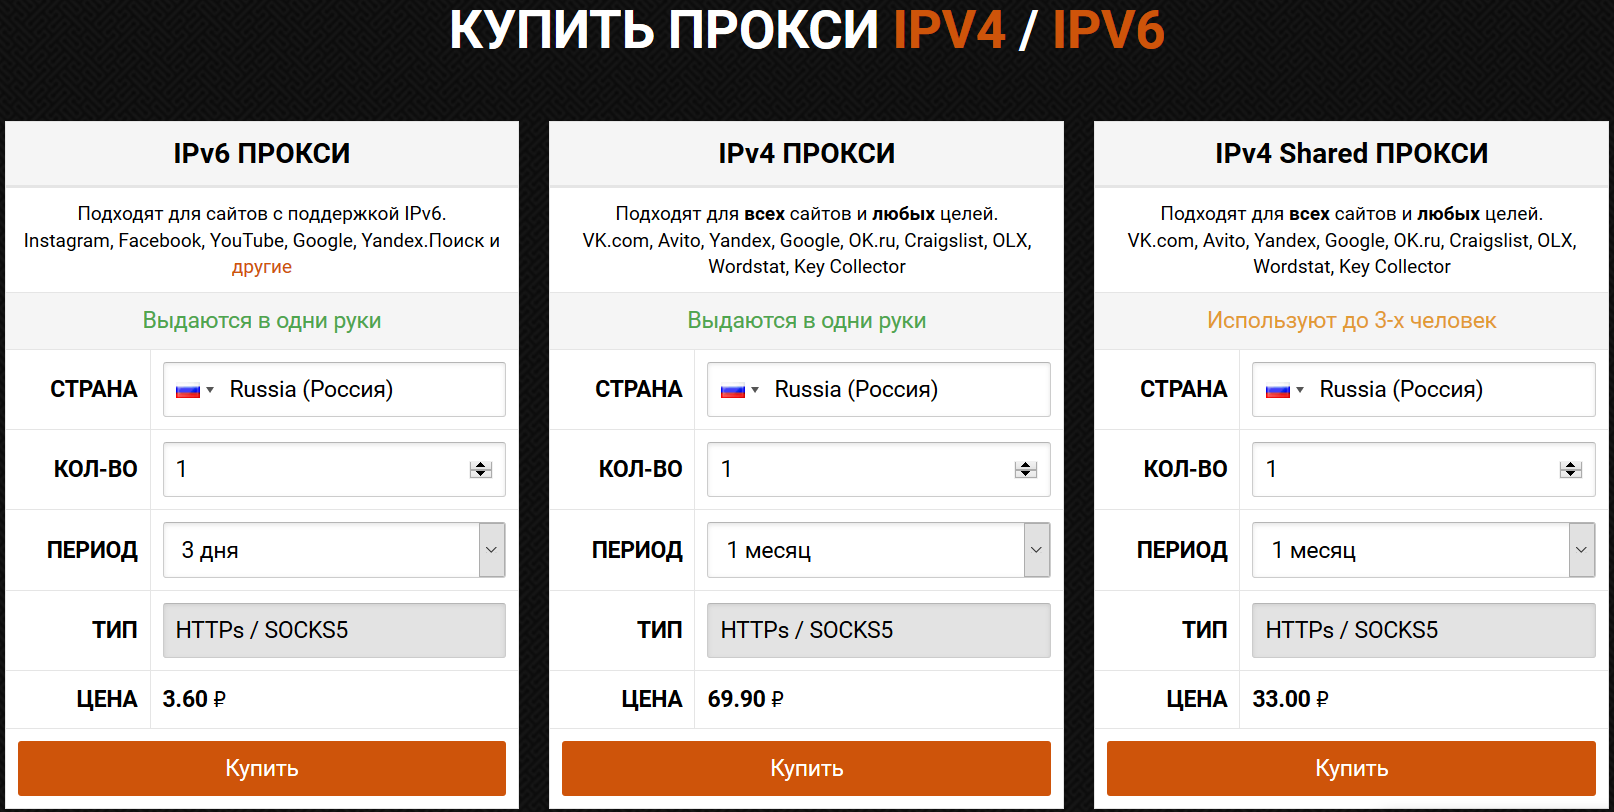 Прокси ipv4 mobileproxy